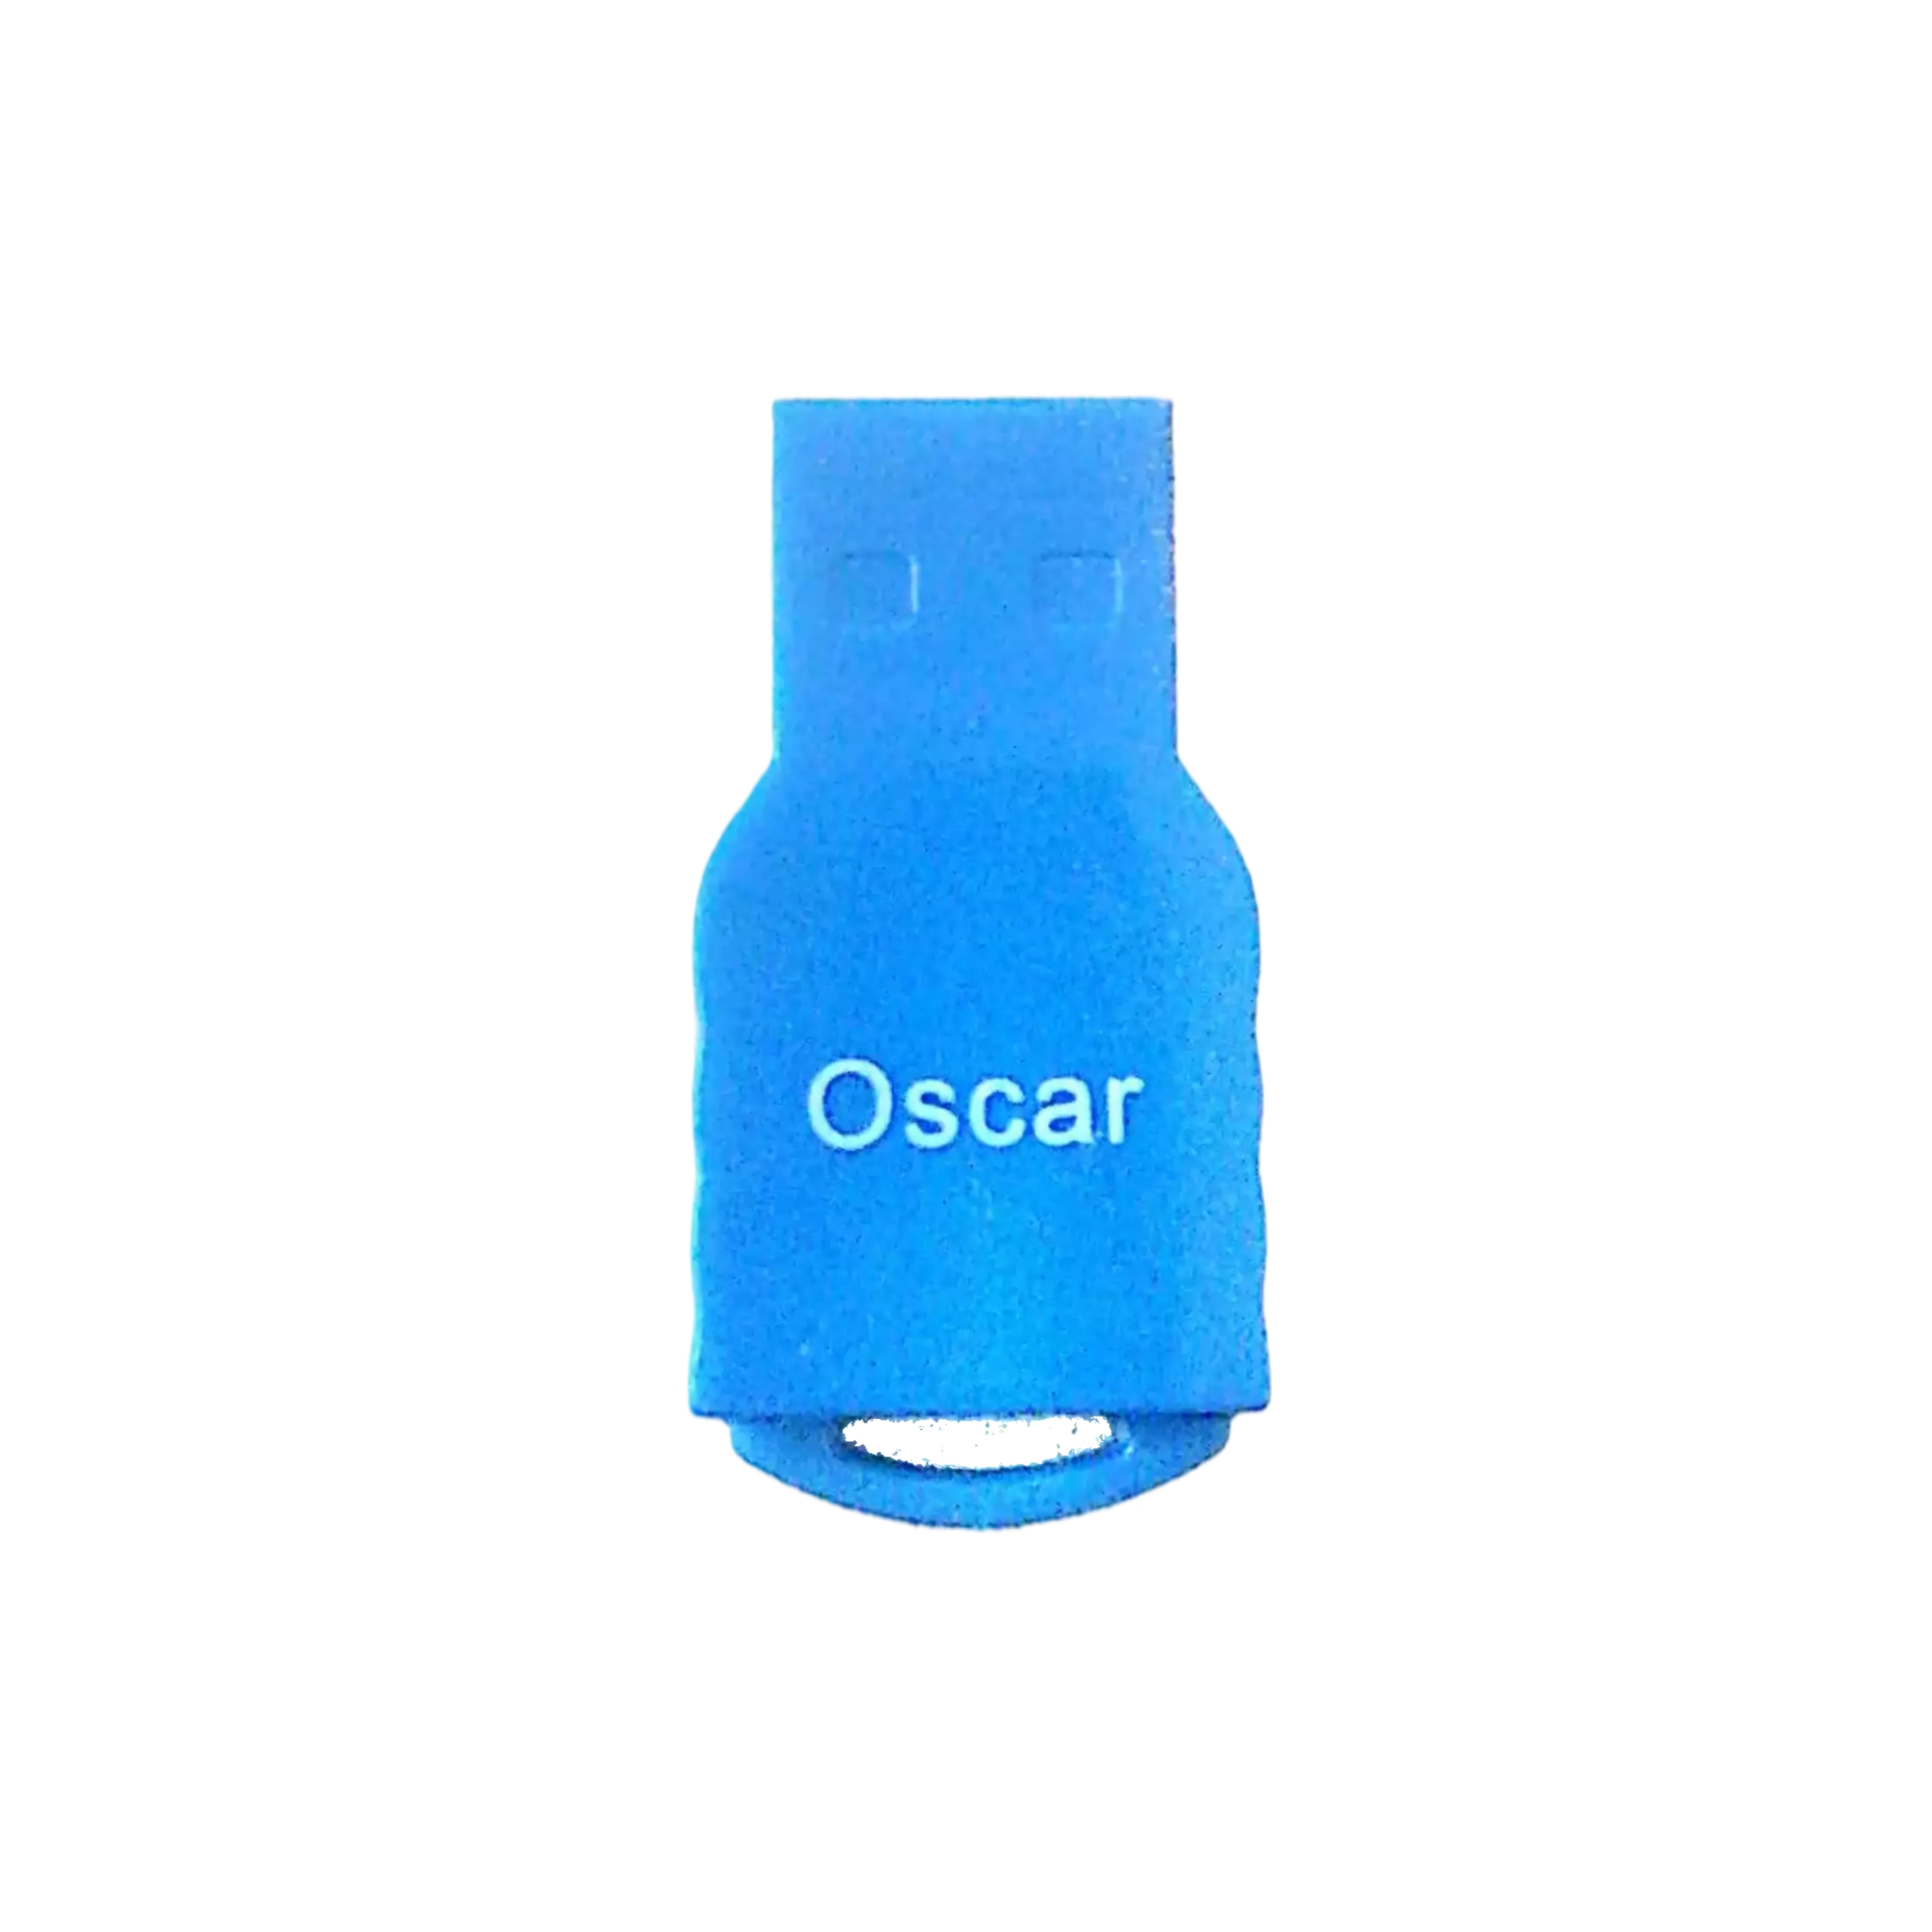 کارت خوان مدل Oscar 002